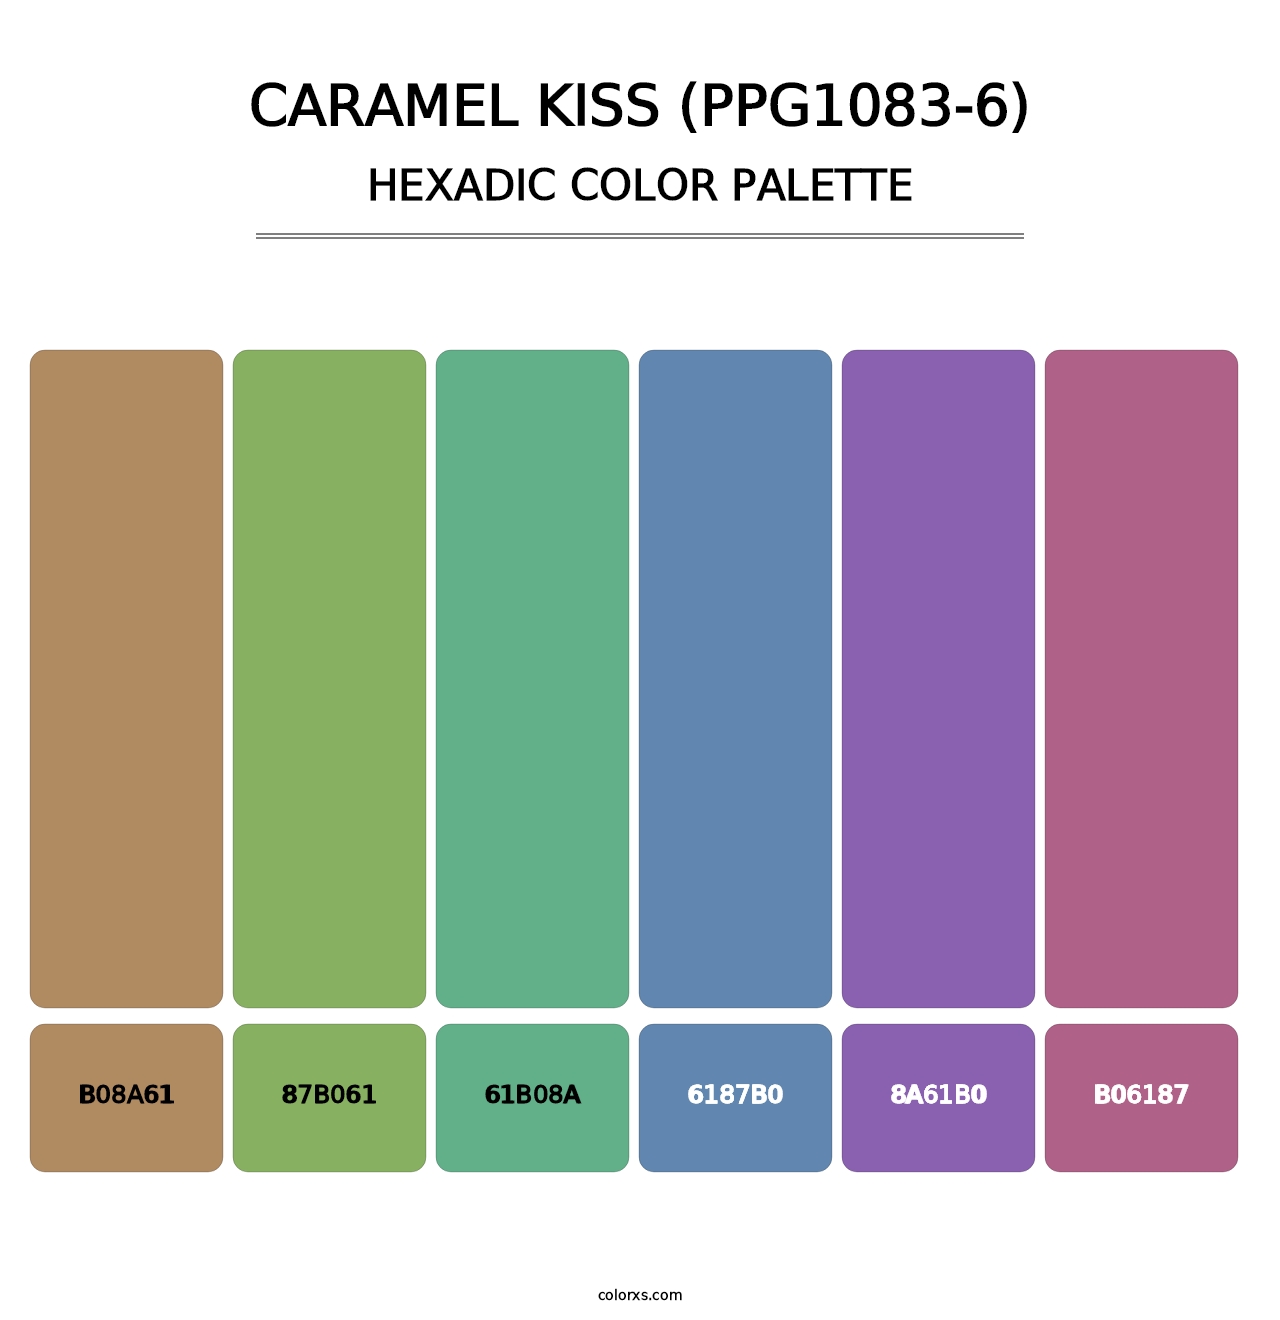 Caramel Kiss (PPG1083-6) - Hexadic Color Palette